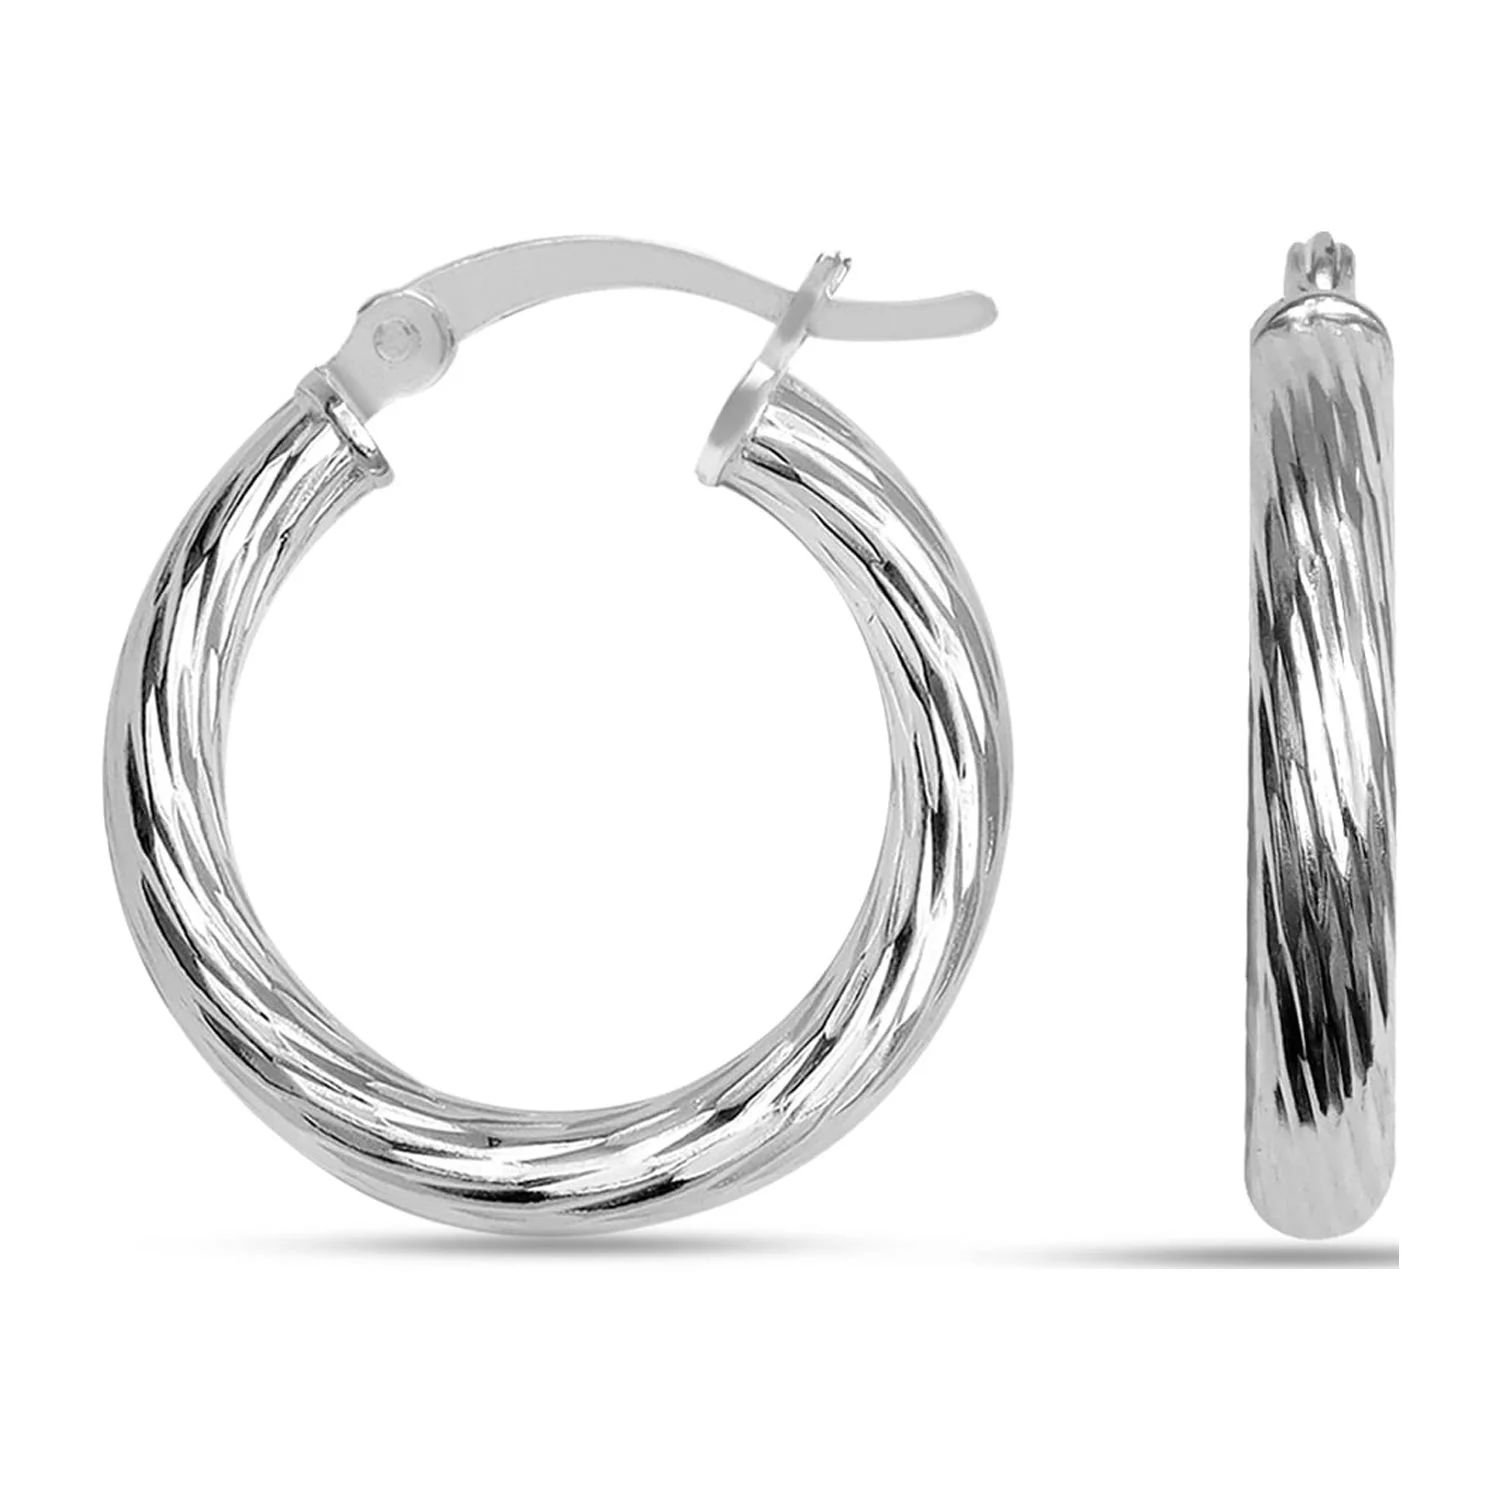 LeCalla 925 Sterling Silver Hoop Earrings for Women Hypoallergenic Diamond Cut Earring Hoops for ... | Walmart (US)